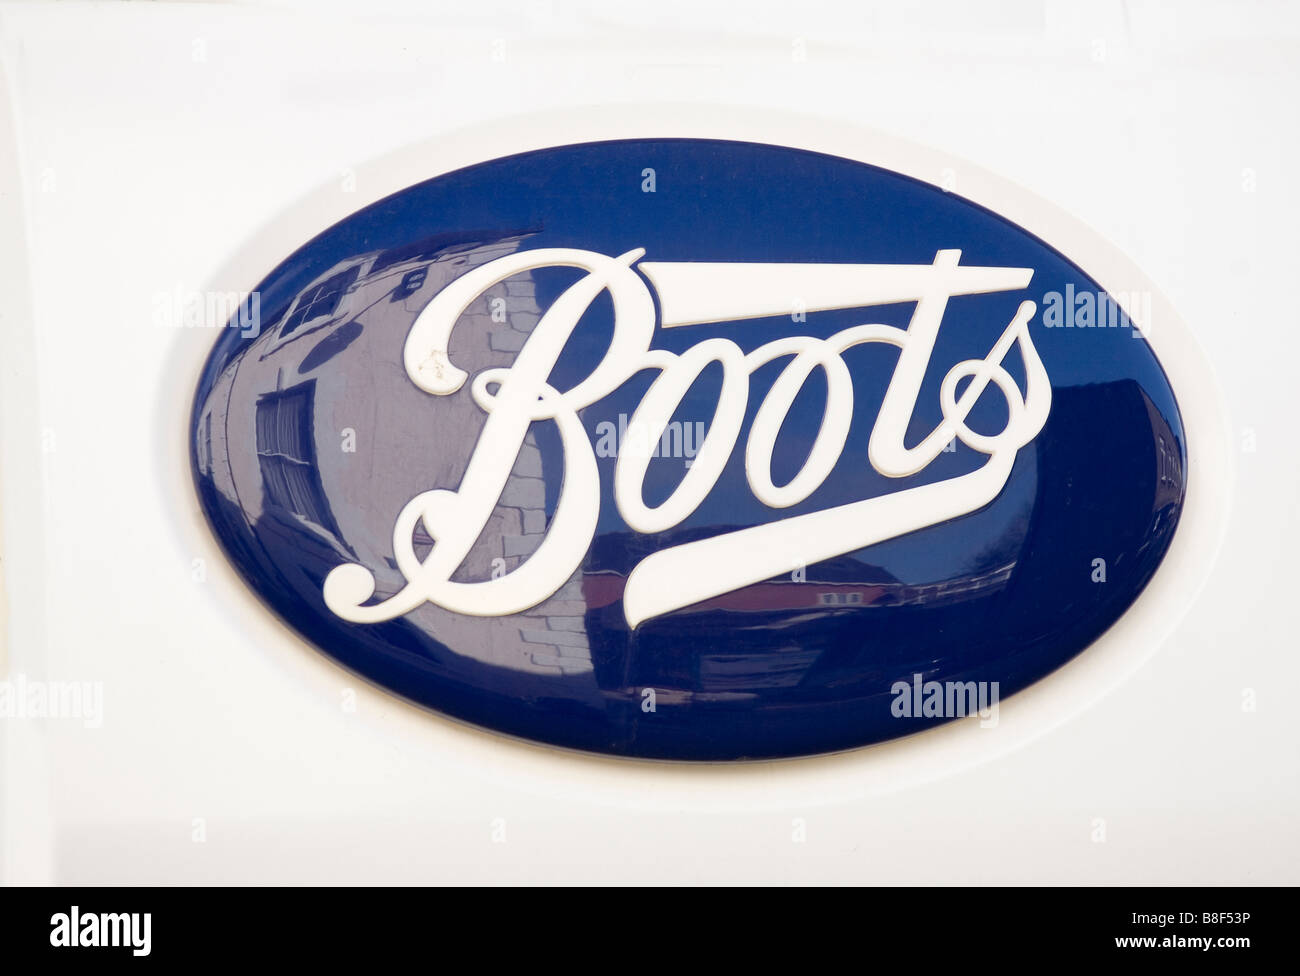 Boots the Chemist bleu plastique ovale Logo Uk White Banque D'Images